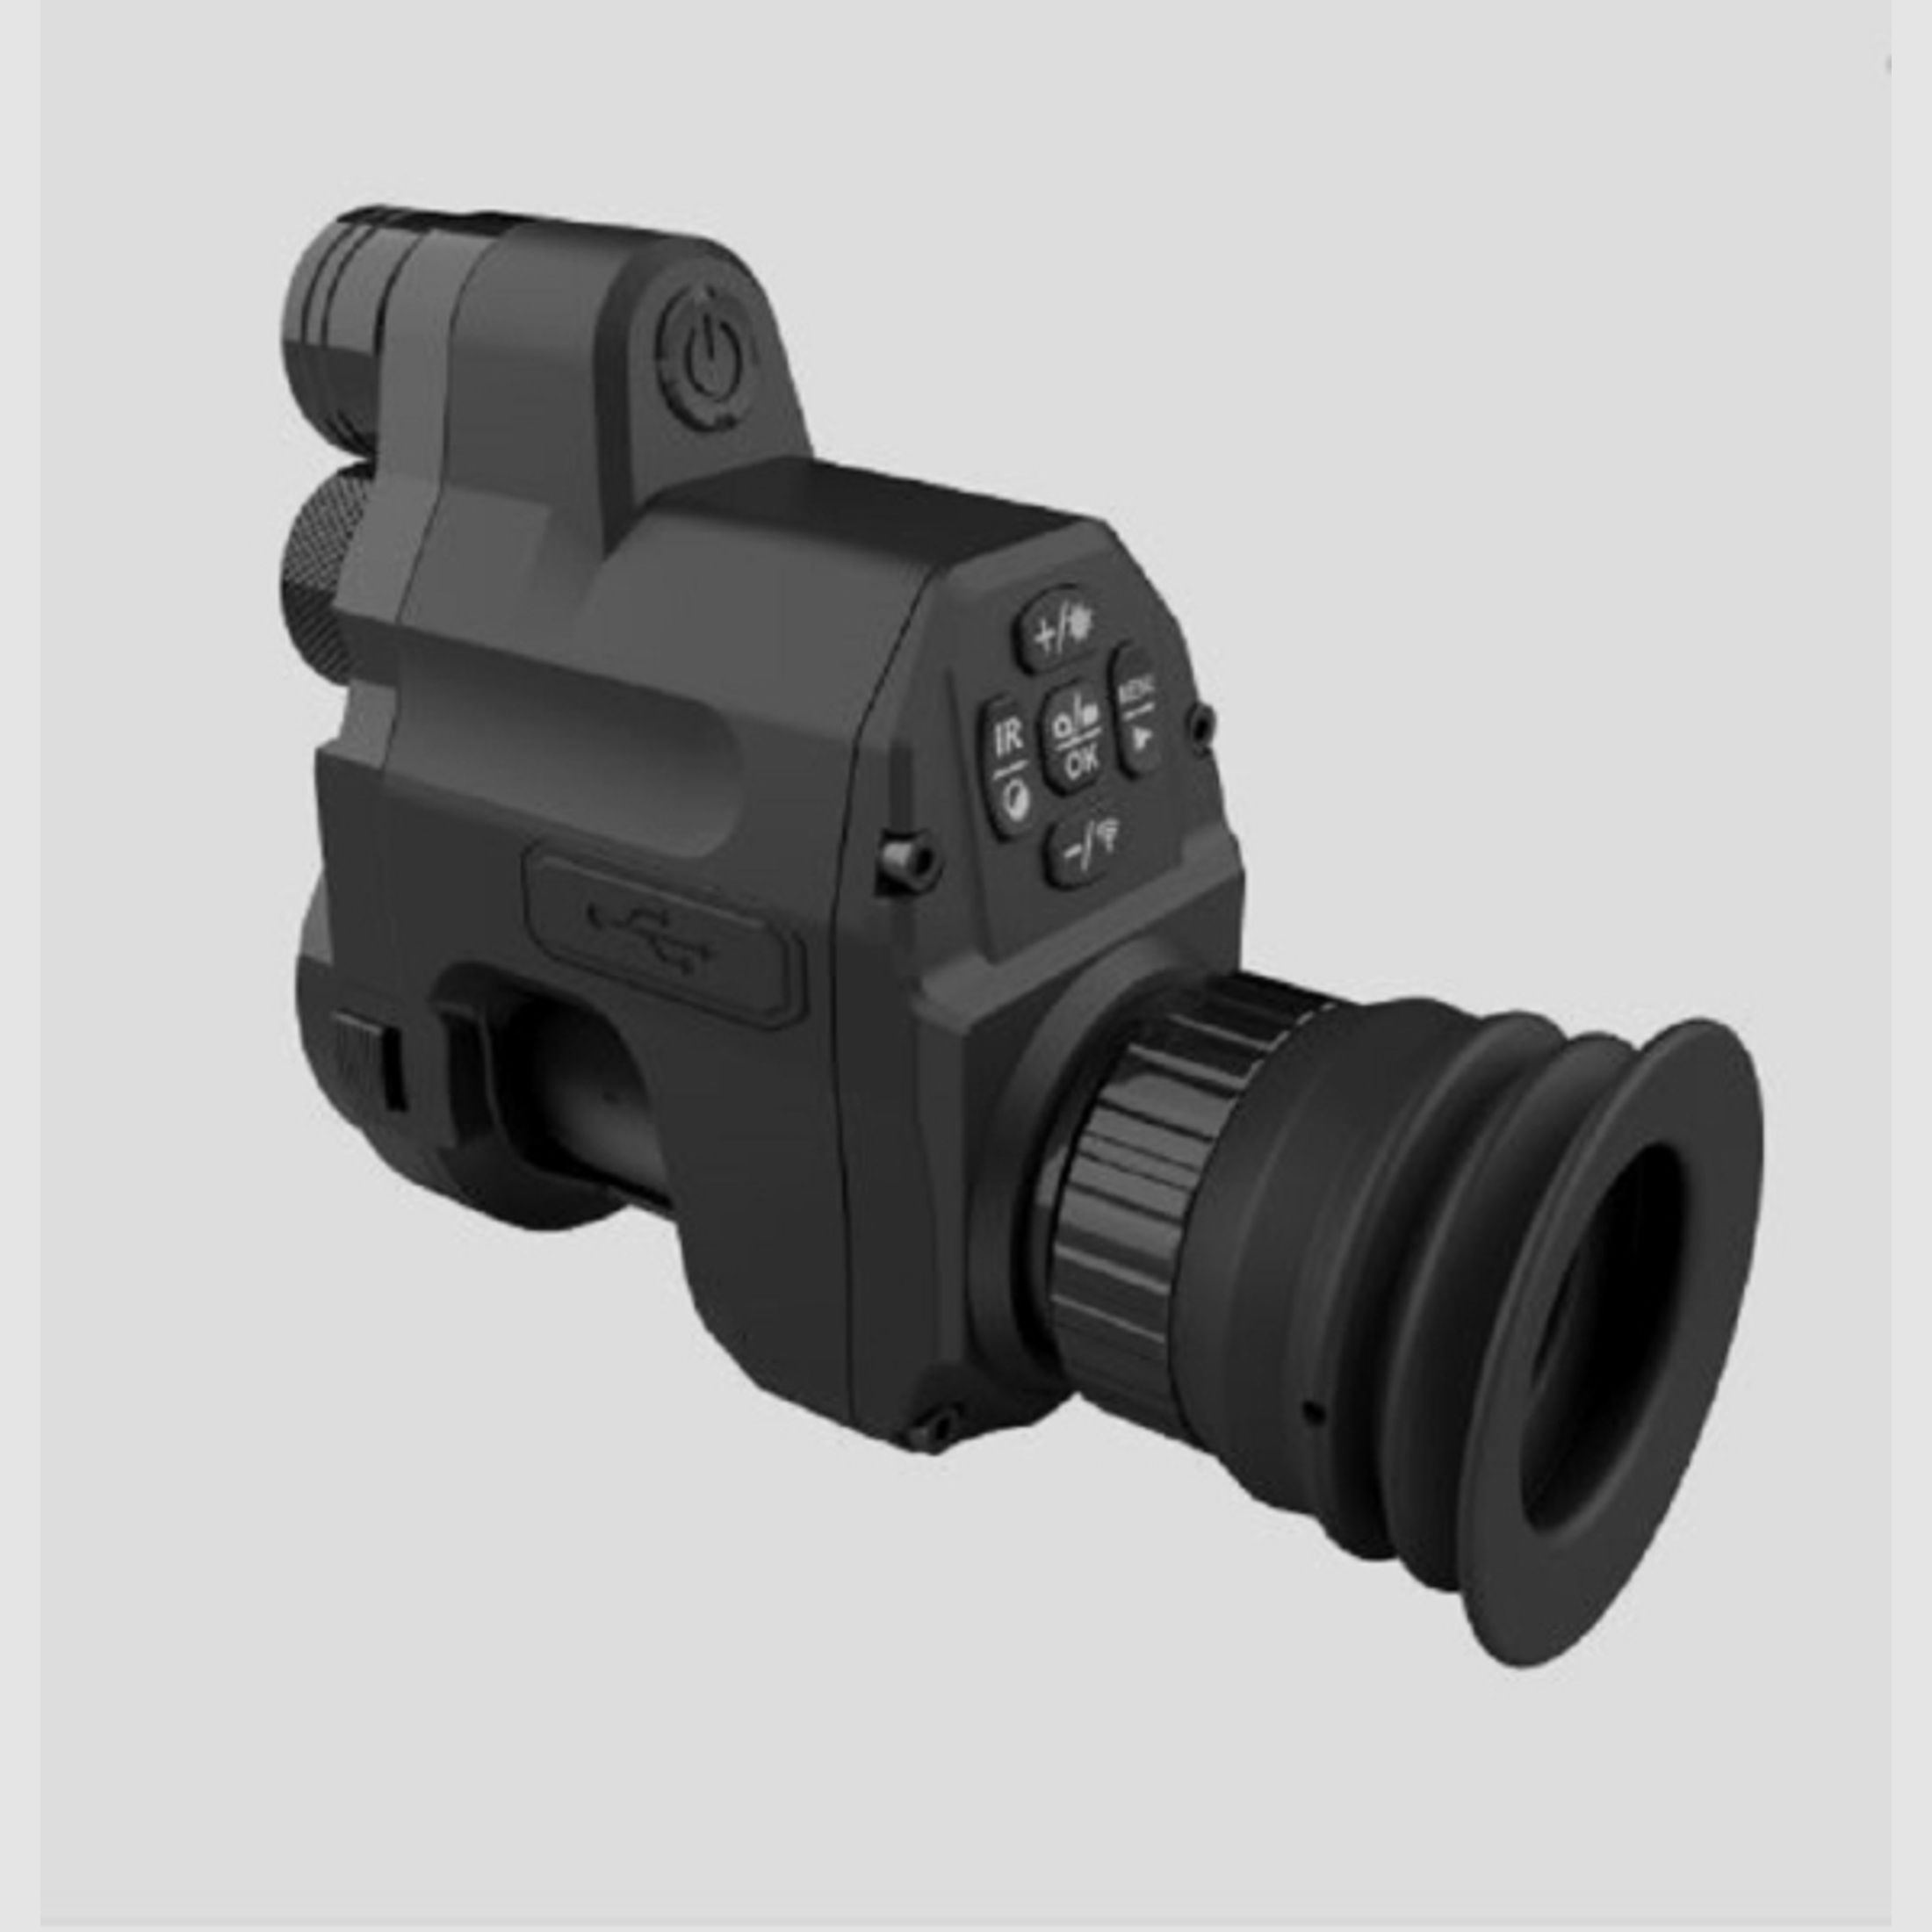 ANGEBOT: Nachtsicht-Nachsatzgerät PARD NV007 V - IR 940 nm - 16mm mit 45 mm Adapter - UVP 299,00